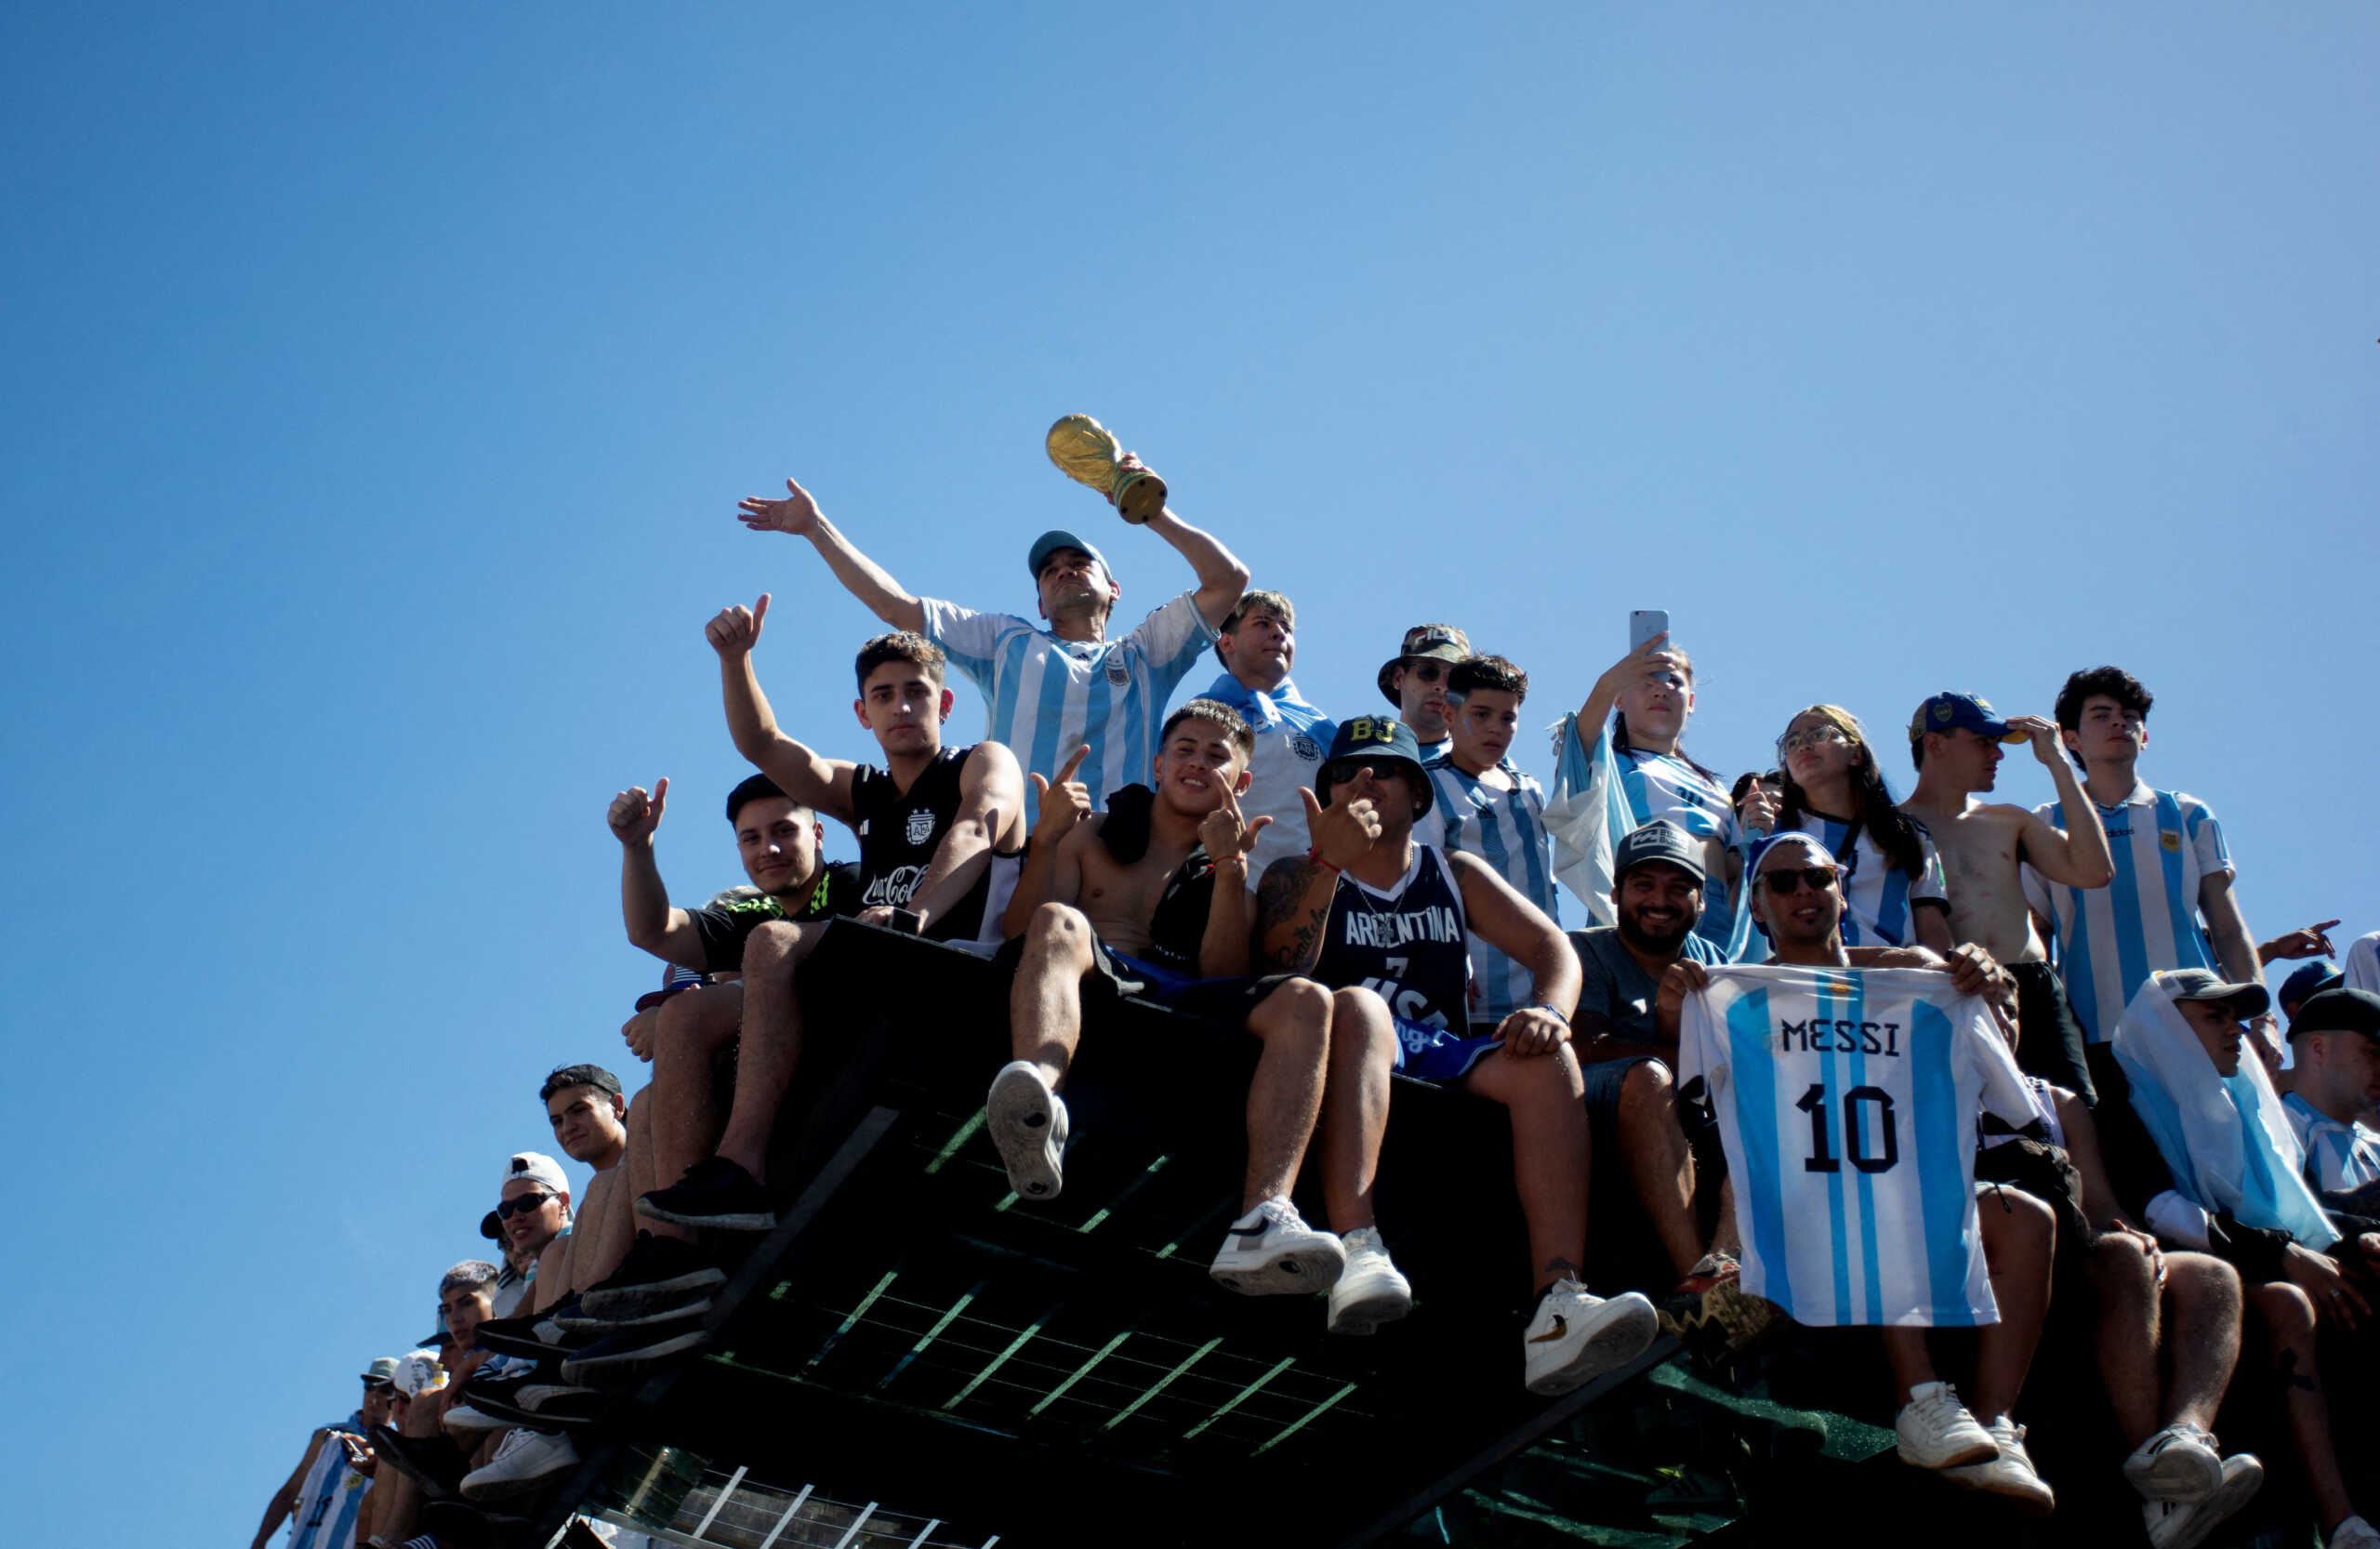 Αργεντινή – Λιονέλ Μέσι: Έξαλλοι πανηγυρισμοί και μπίρες στην παρέλαση στο Μπουένος Άιρες